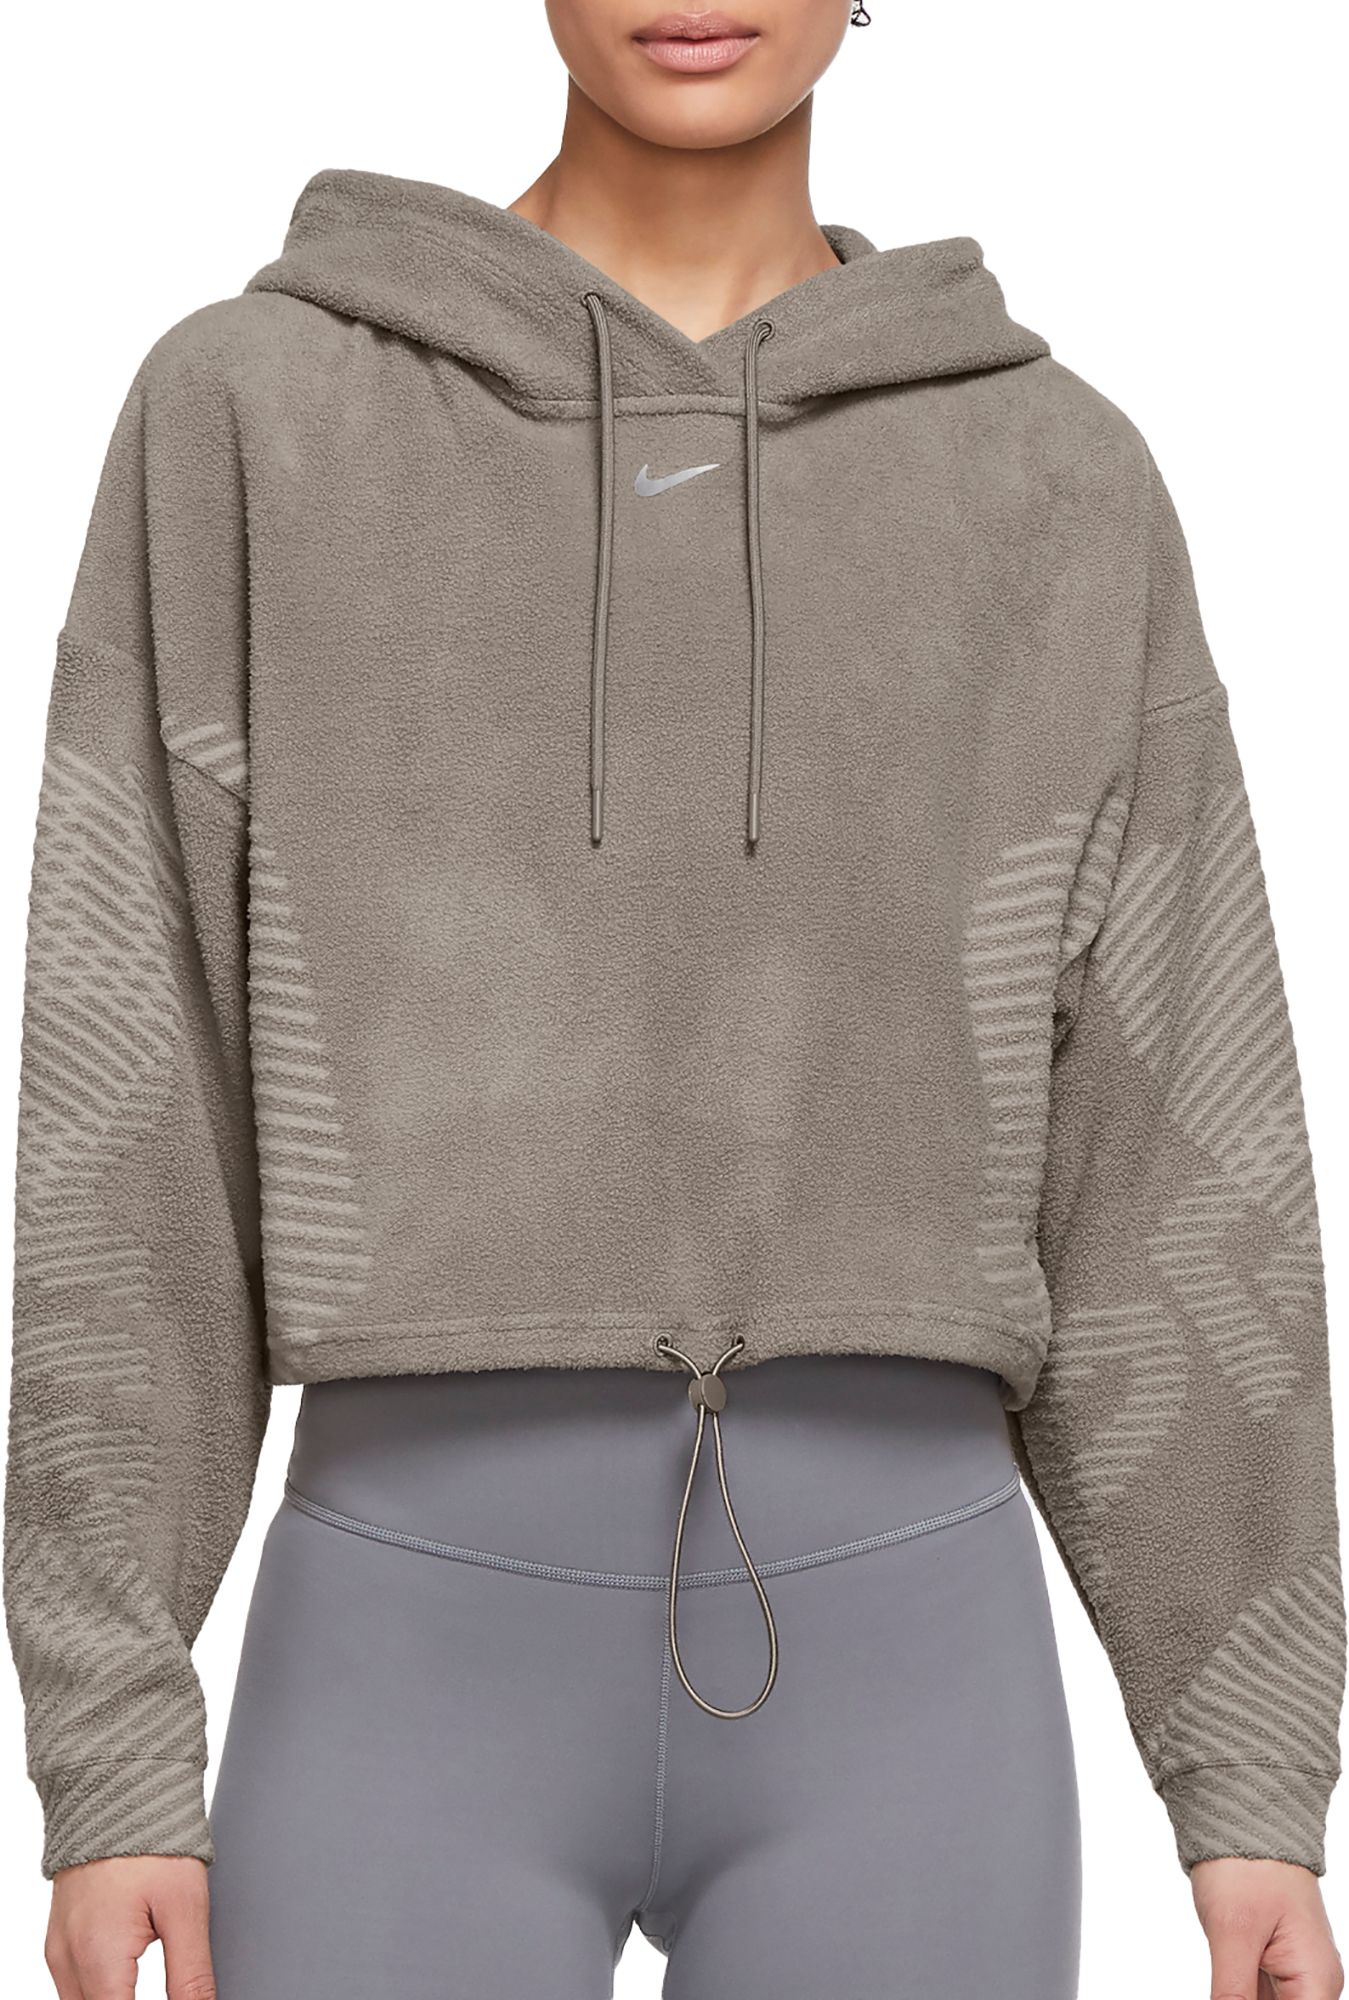 Nike Women's Cropped Fleece Hoodie - Sweaters